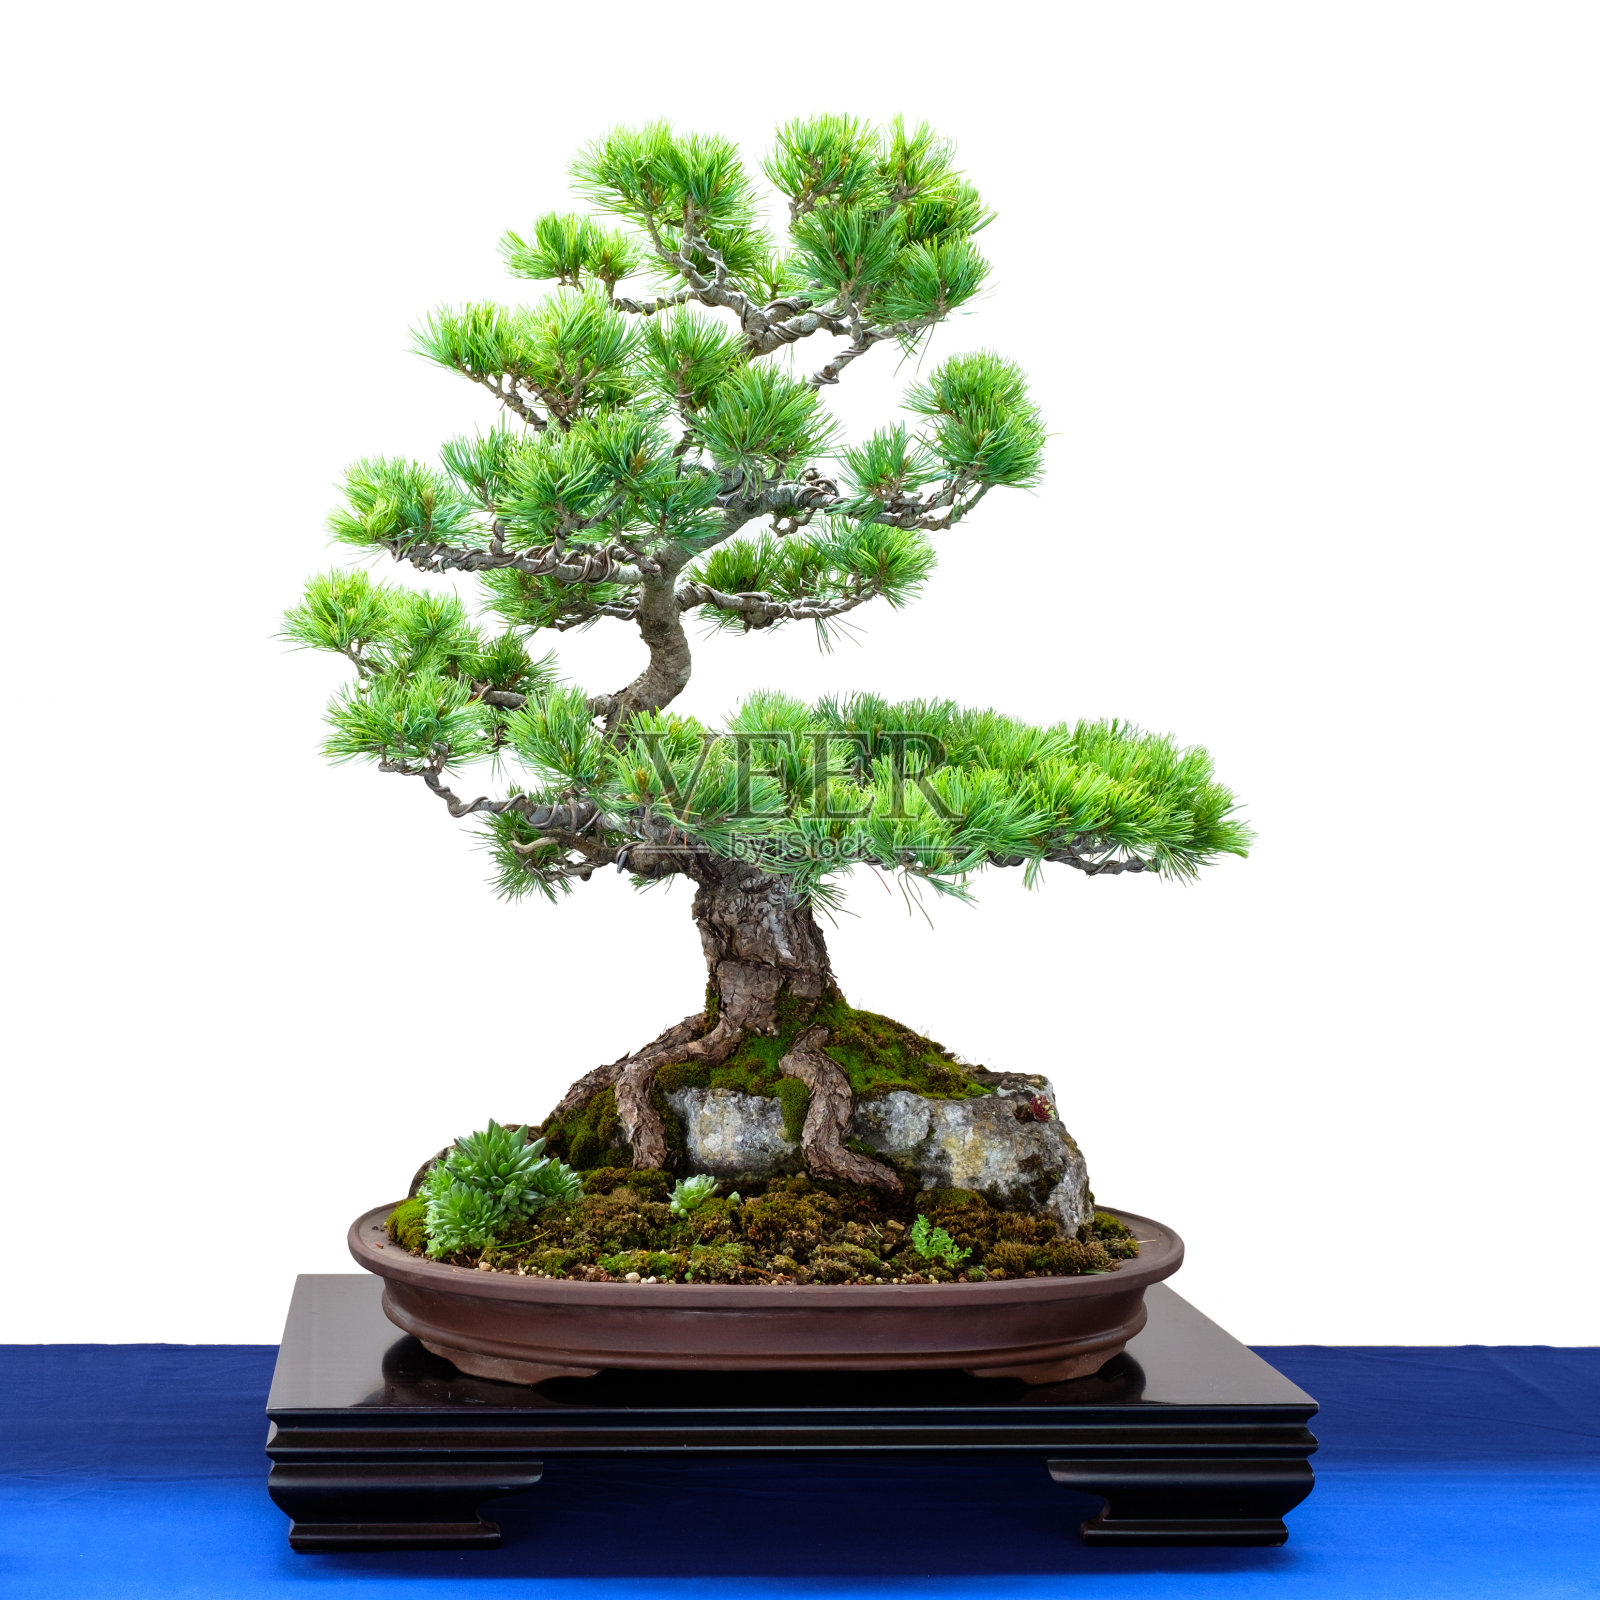 日本五指松(parviflora Pinus)针叶树盆景照片摄影图片